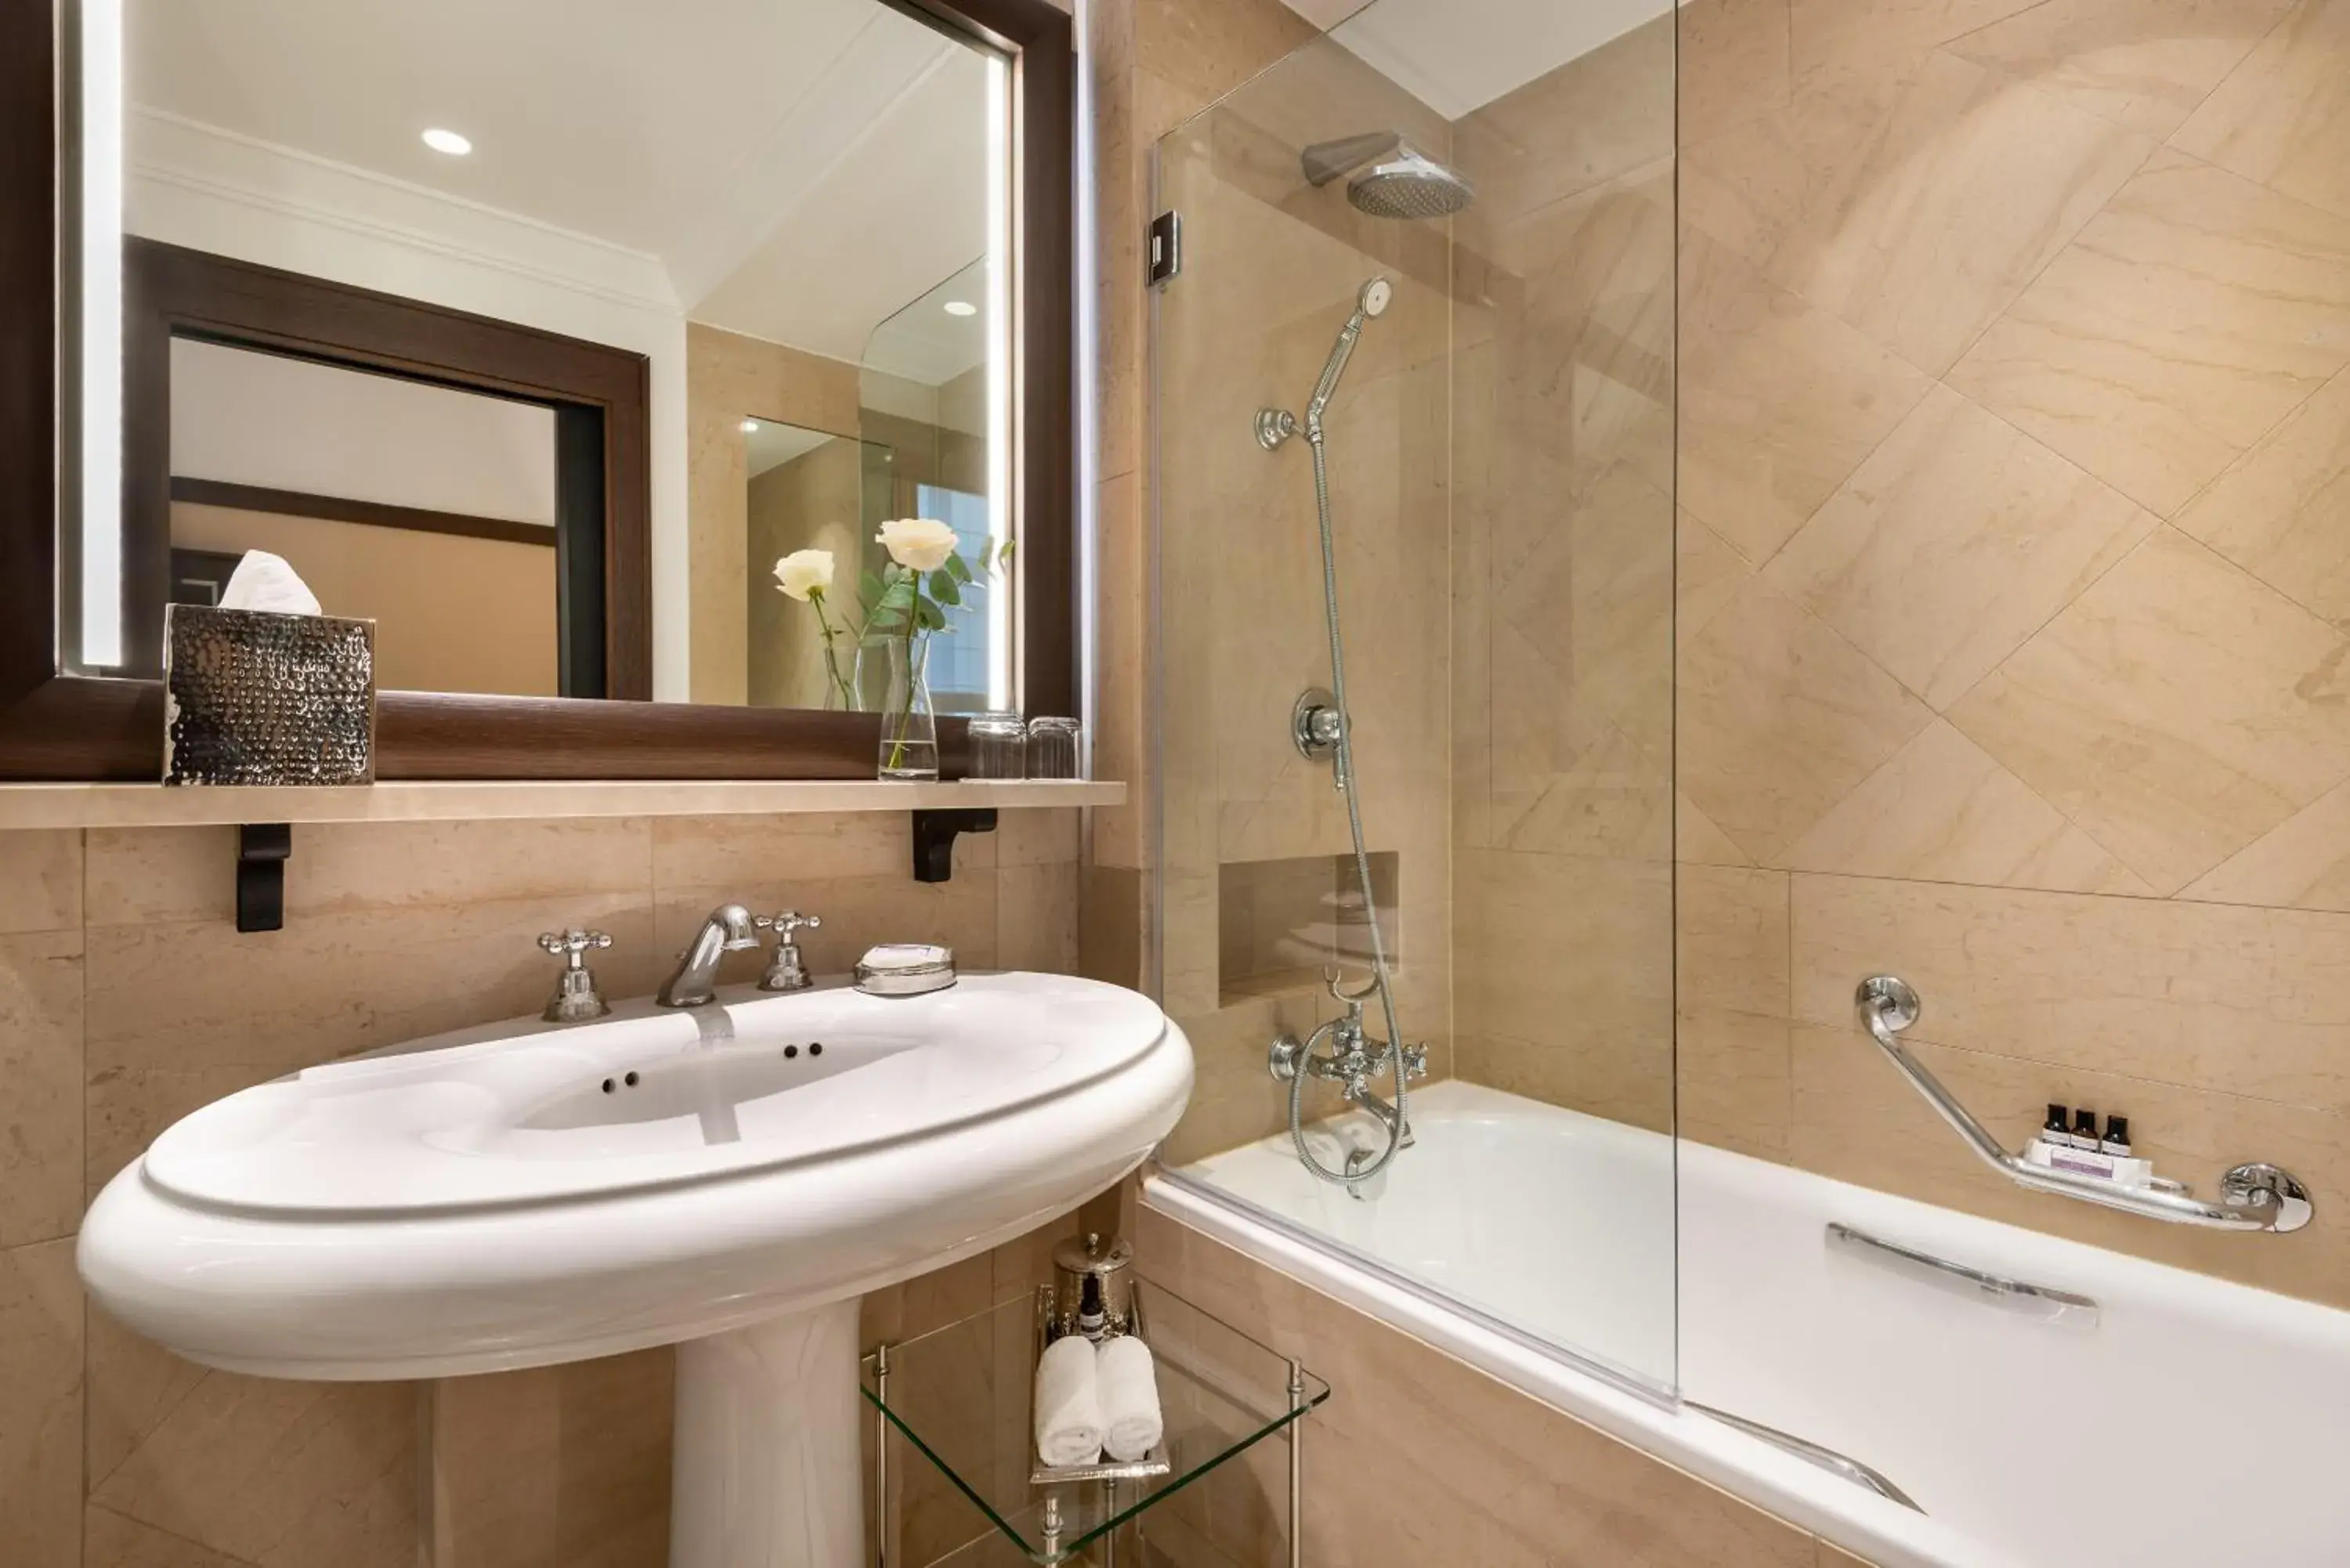 Toilet, Bathroom in Hyatt Paris Madeleine Hotel